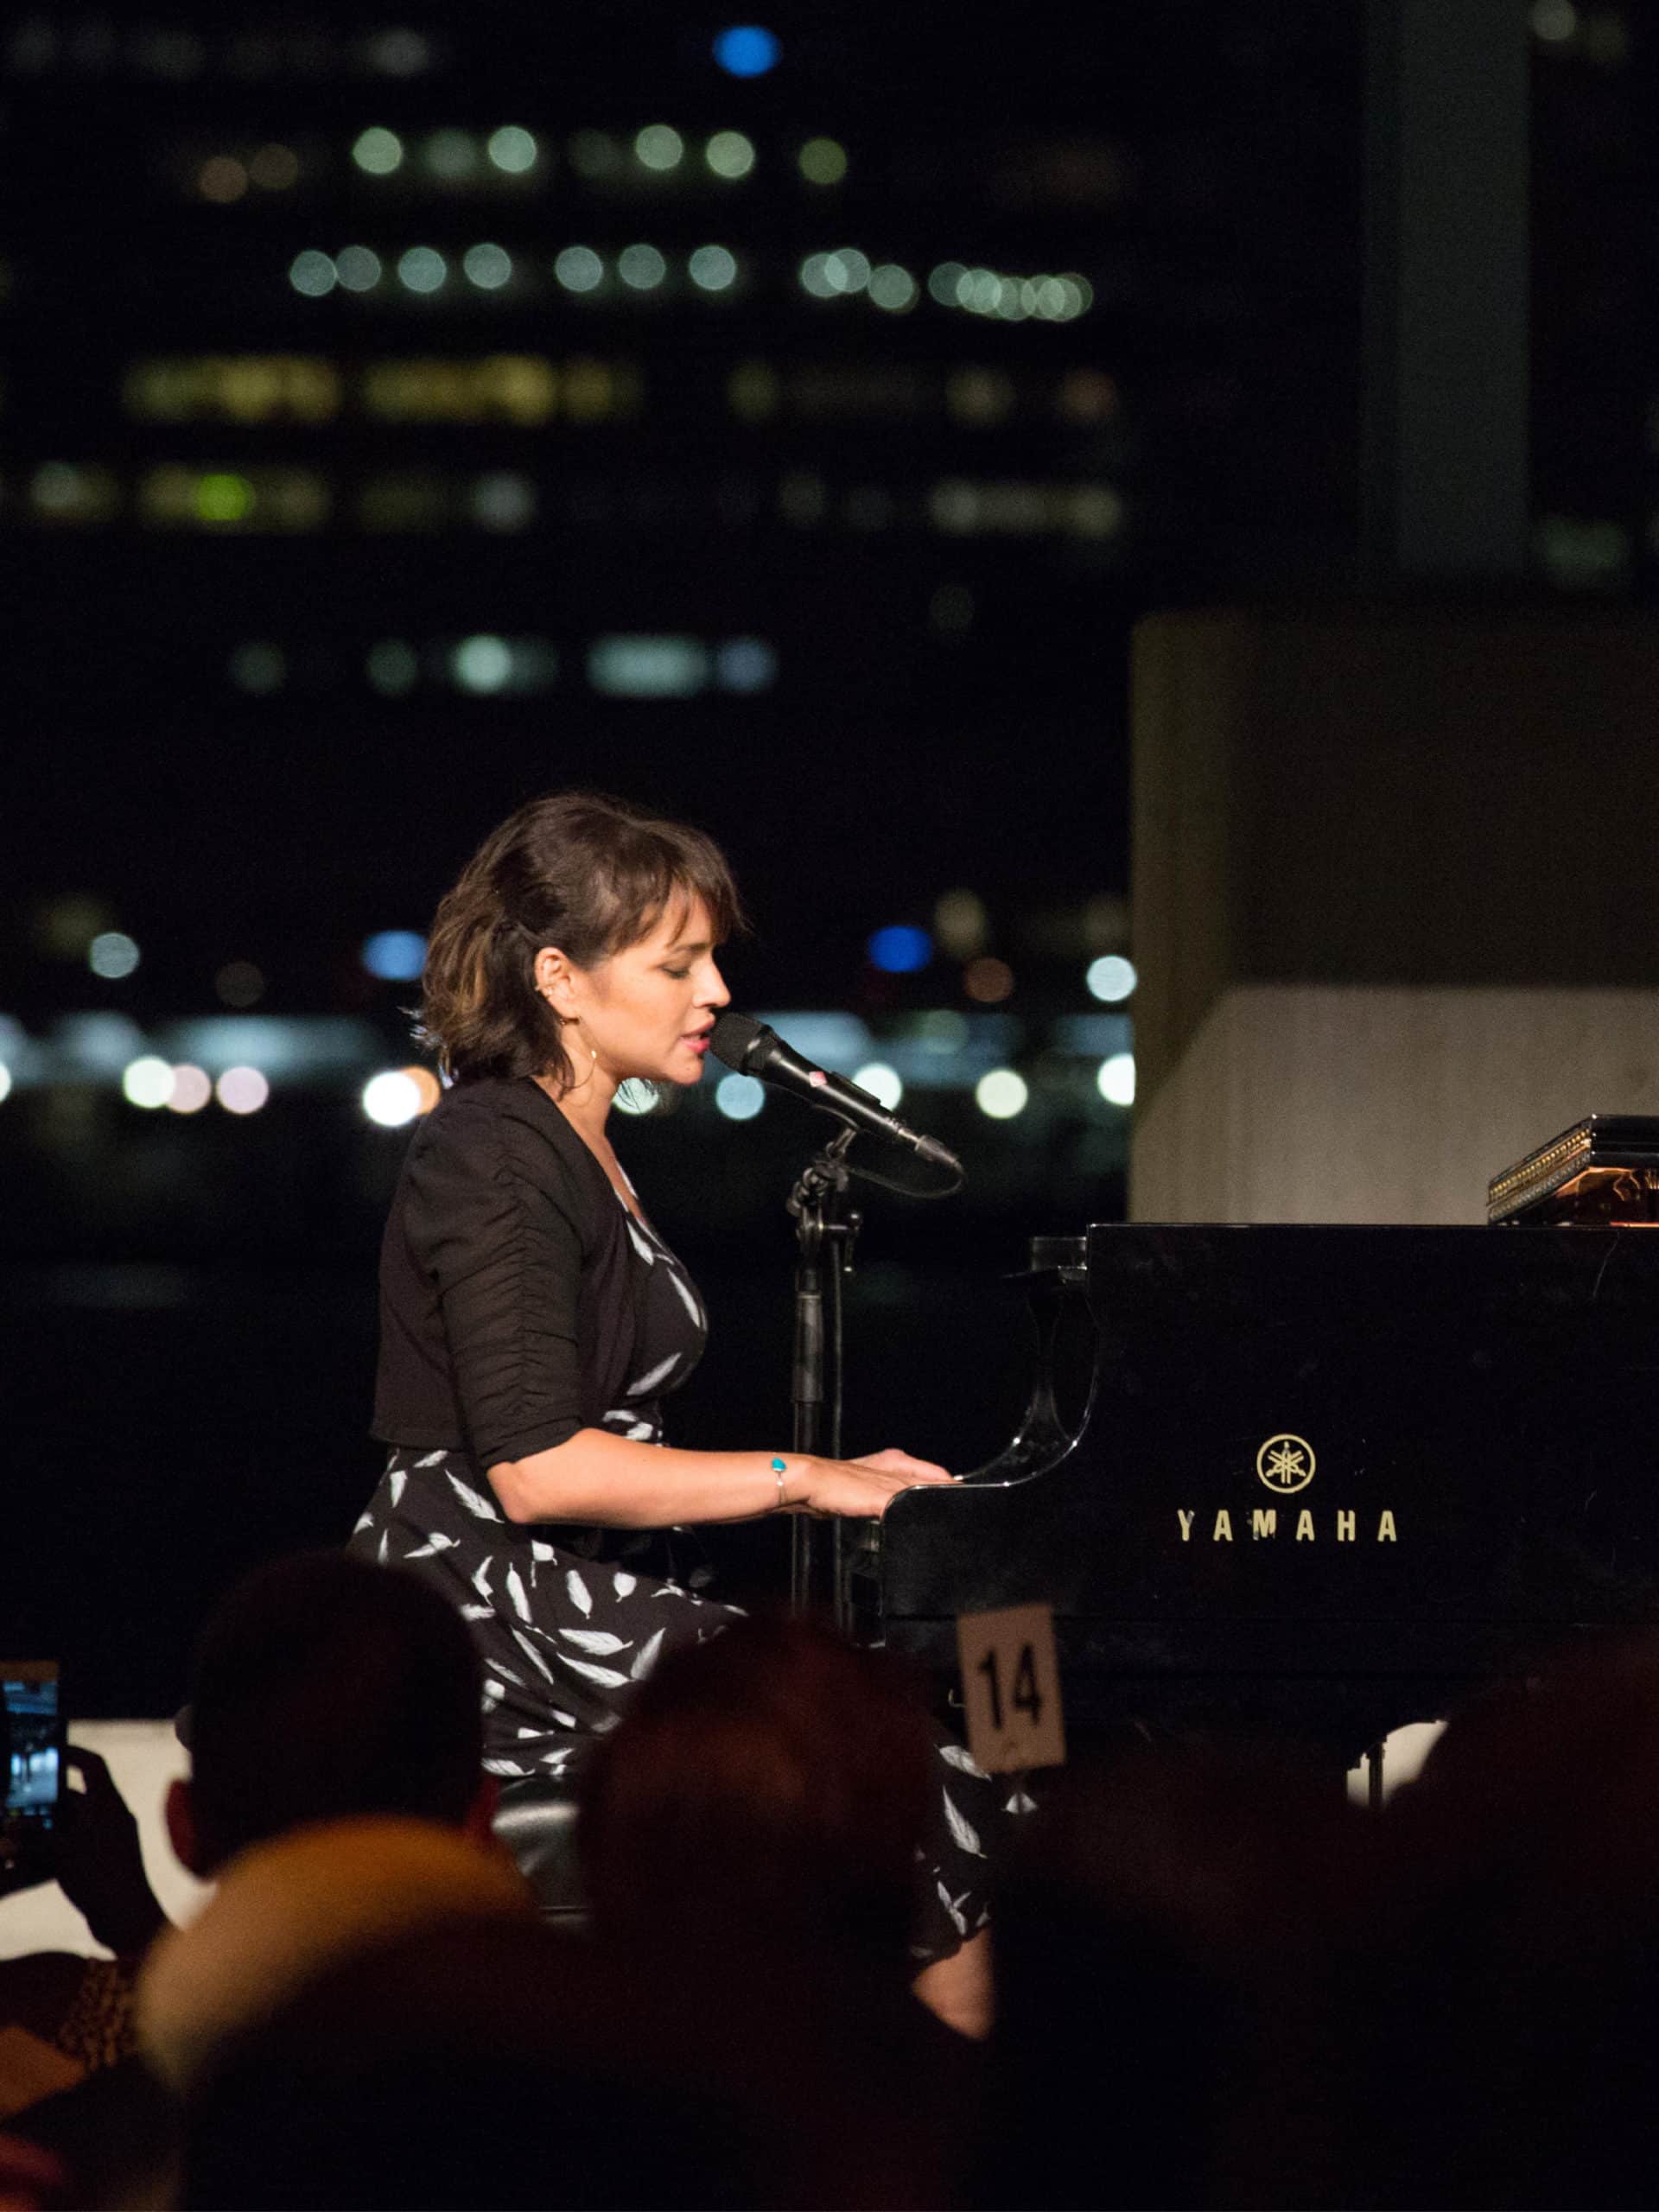 Norah Jones performing at a piano at the Brooklyn Black Tie Ball at night.